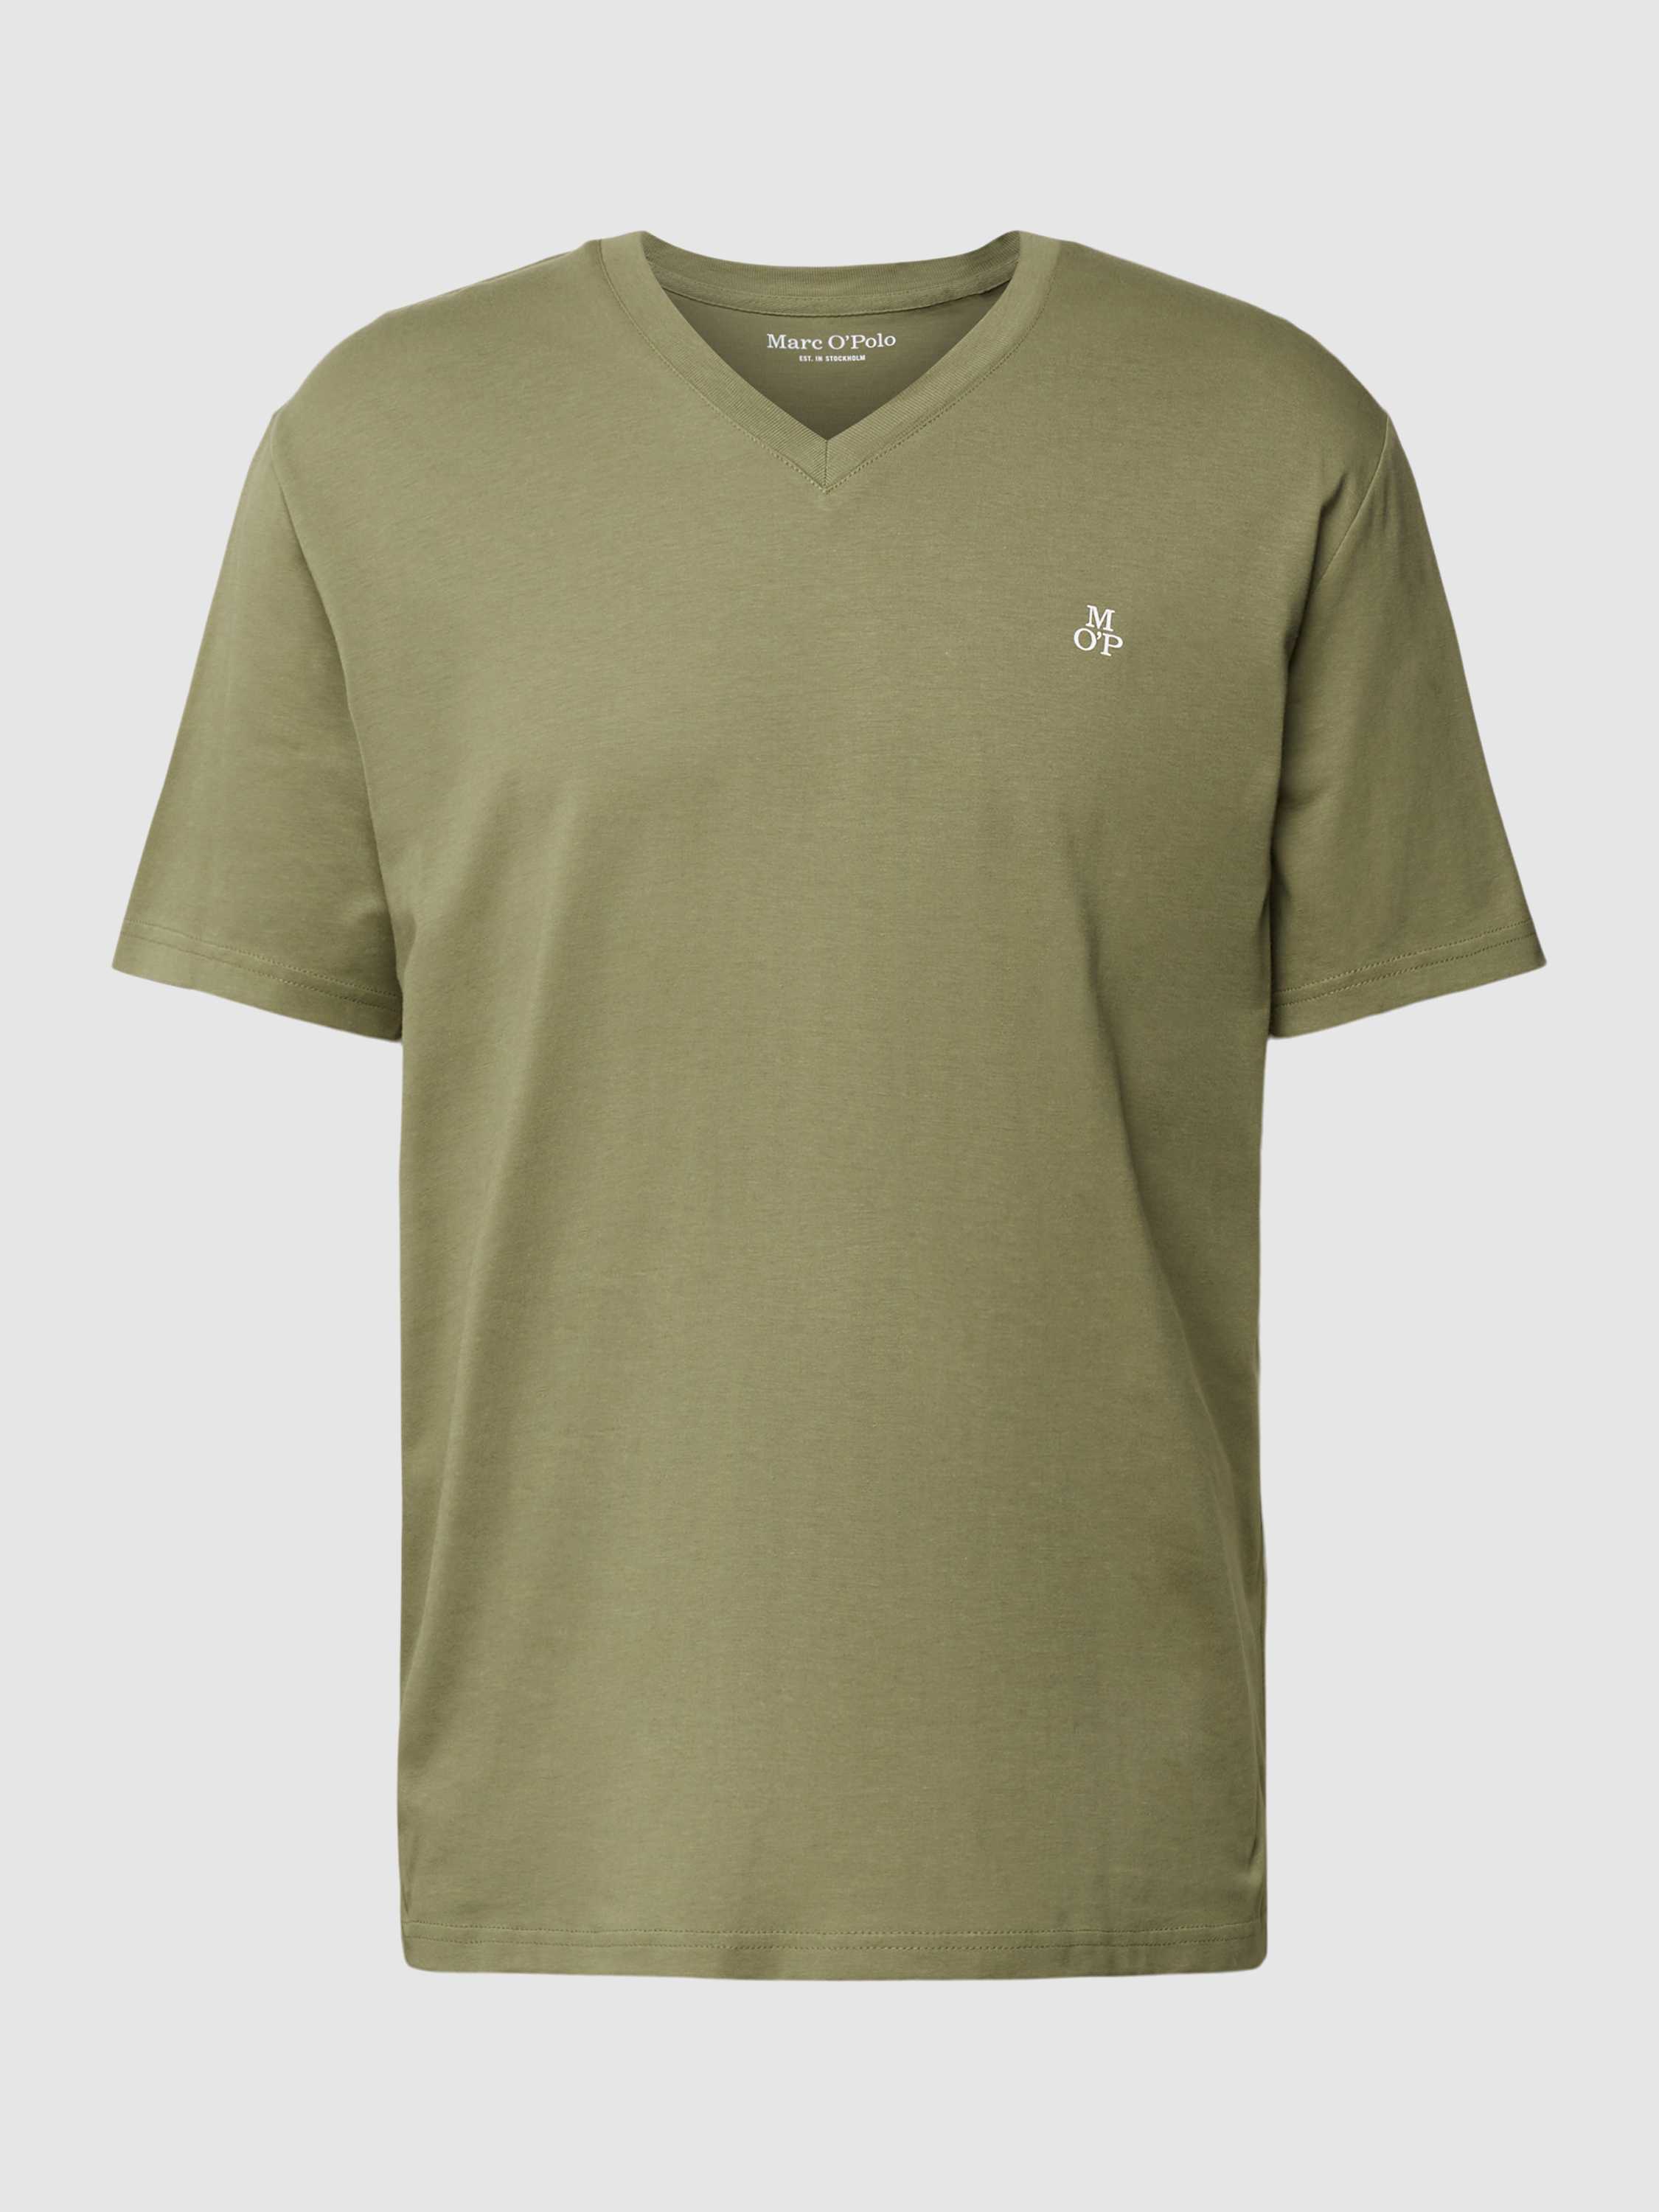 T-Shirt mit V-Ausschnitt in unifarbenem Design